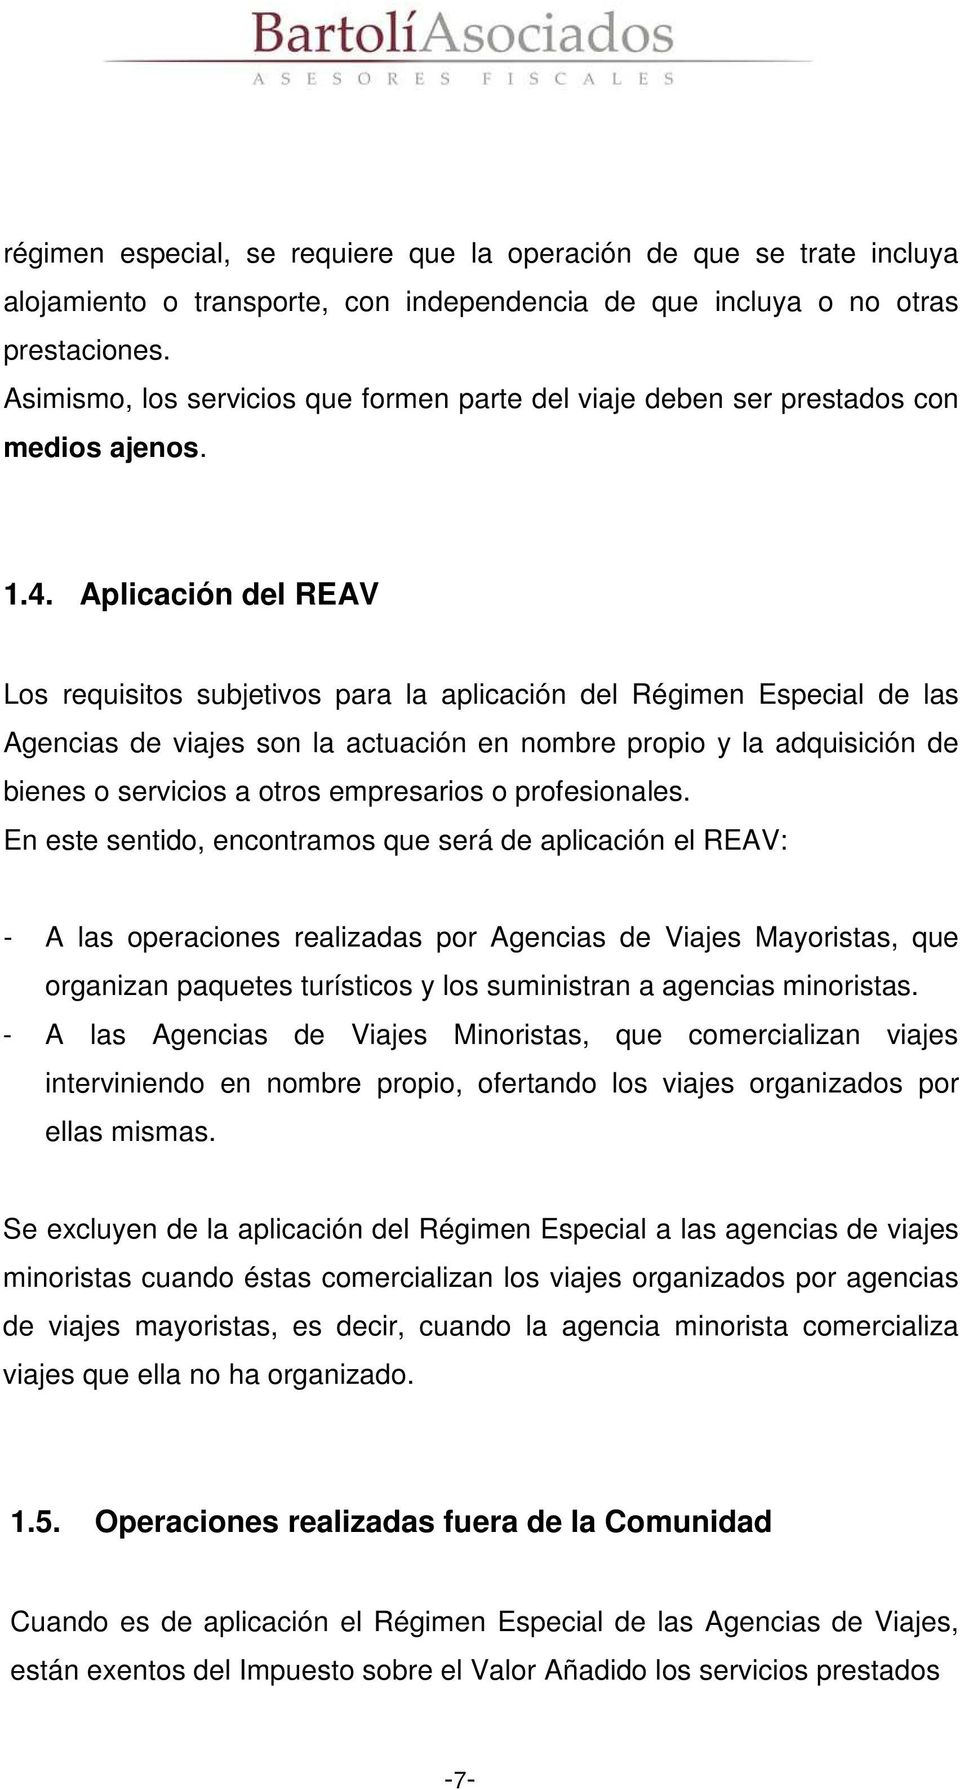 Aplicación del REAV Los requisitos subjetivos para la aplicación del Régimen Especial de las Agencias de viajes son la actuación en nombre propio y la adquisición de bienes o servicios a otros